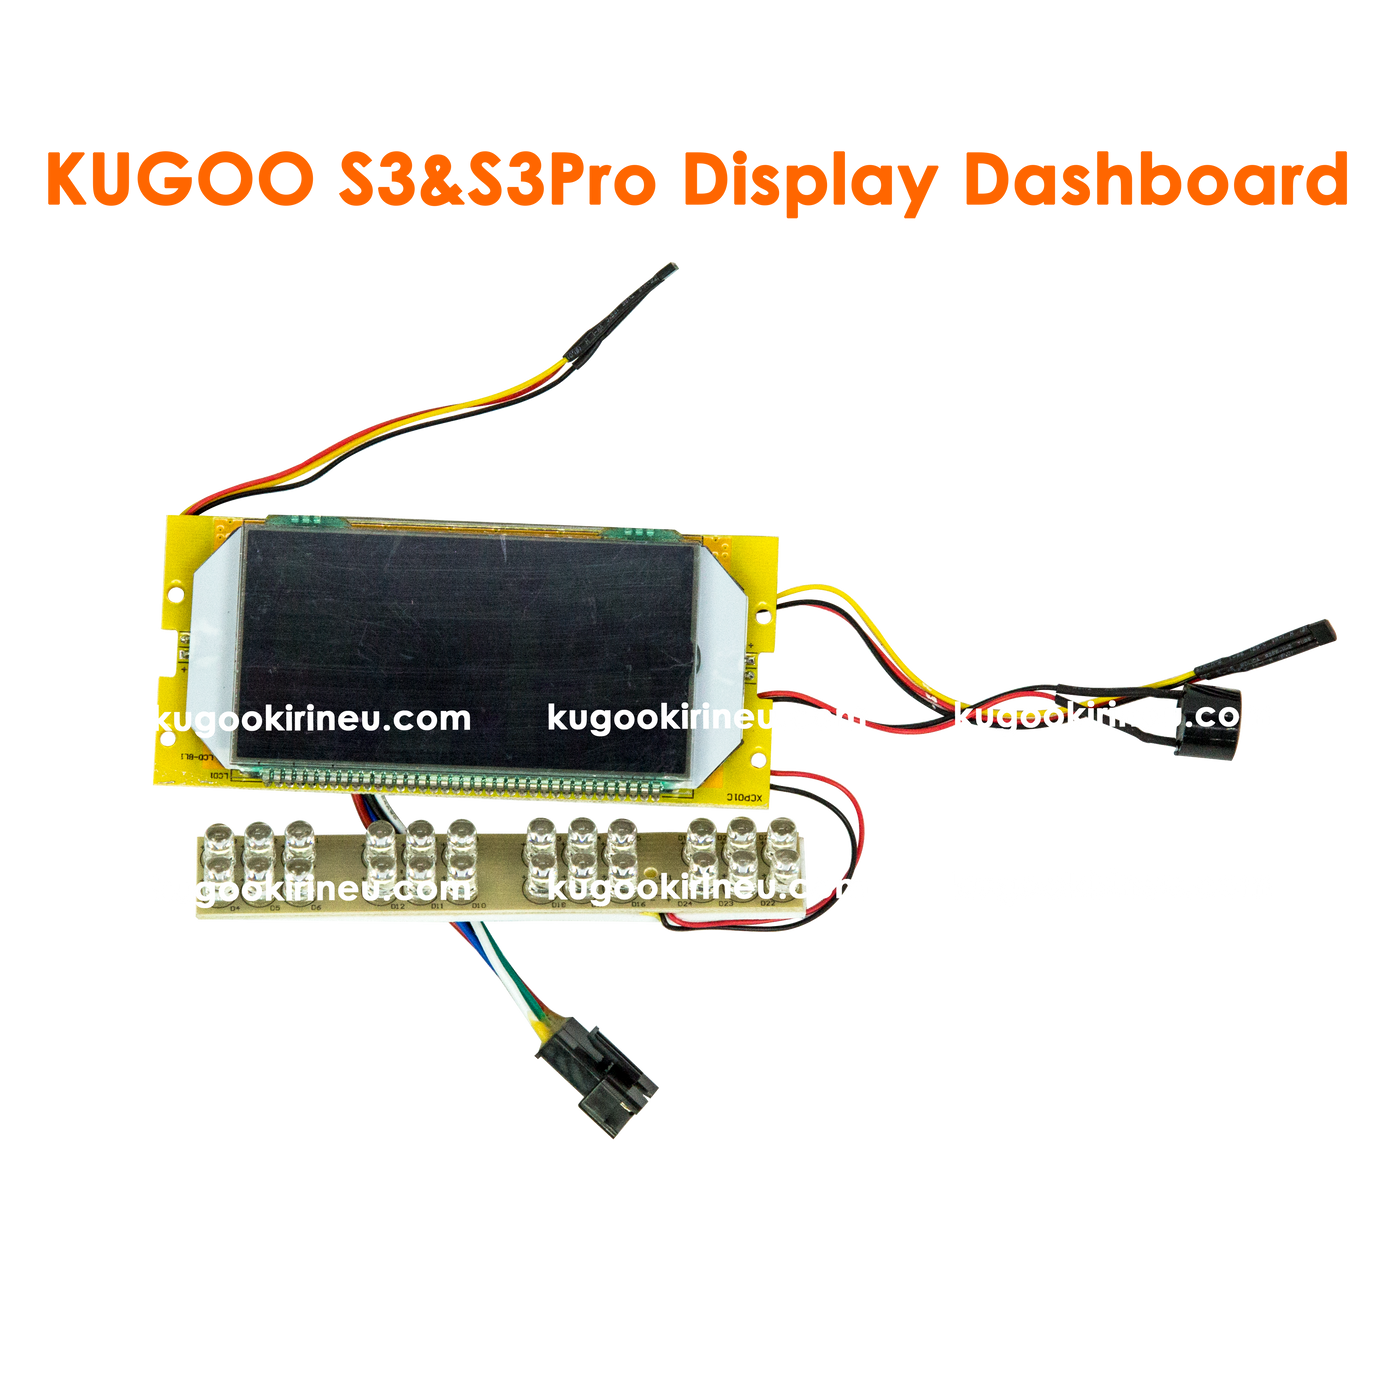 Pièces de rechange pour KUGOO S3 | KUGOO S3 Pro | KUKIRIN S3 Pro Scooter électrique